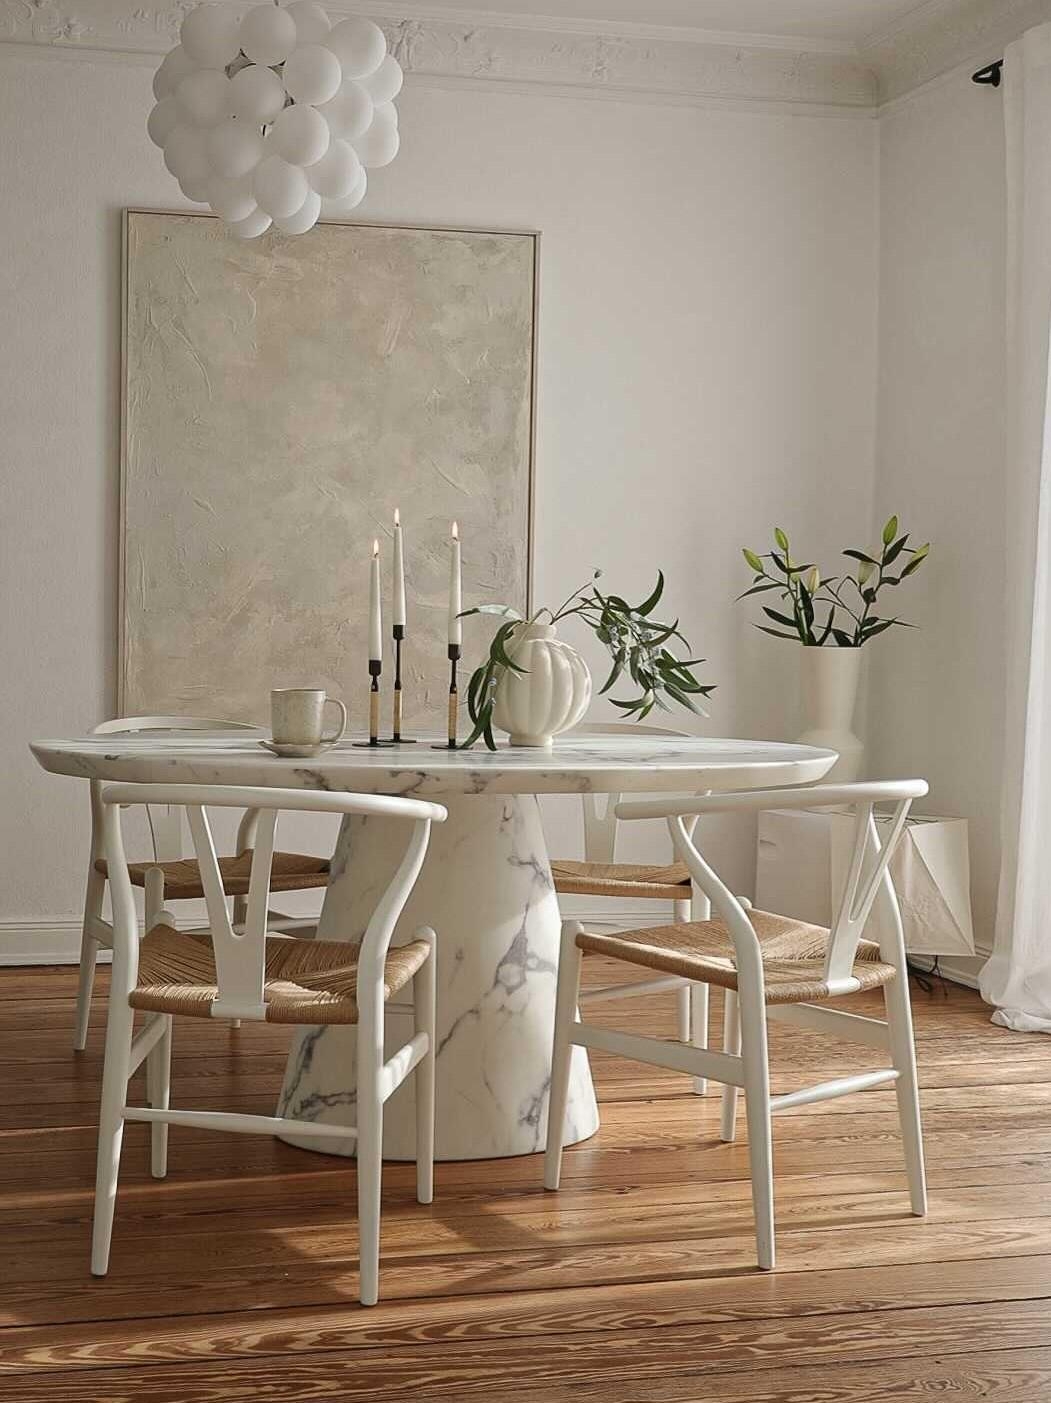 Neuer #Esszimmertisch

#esszimmer #marmor  #tisch #stühle #altbauliebe #wohnen #interior #interiordesign #leuchte #diy